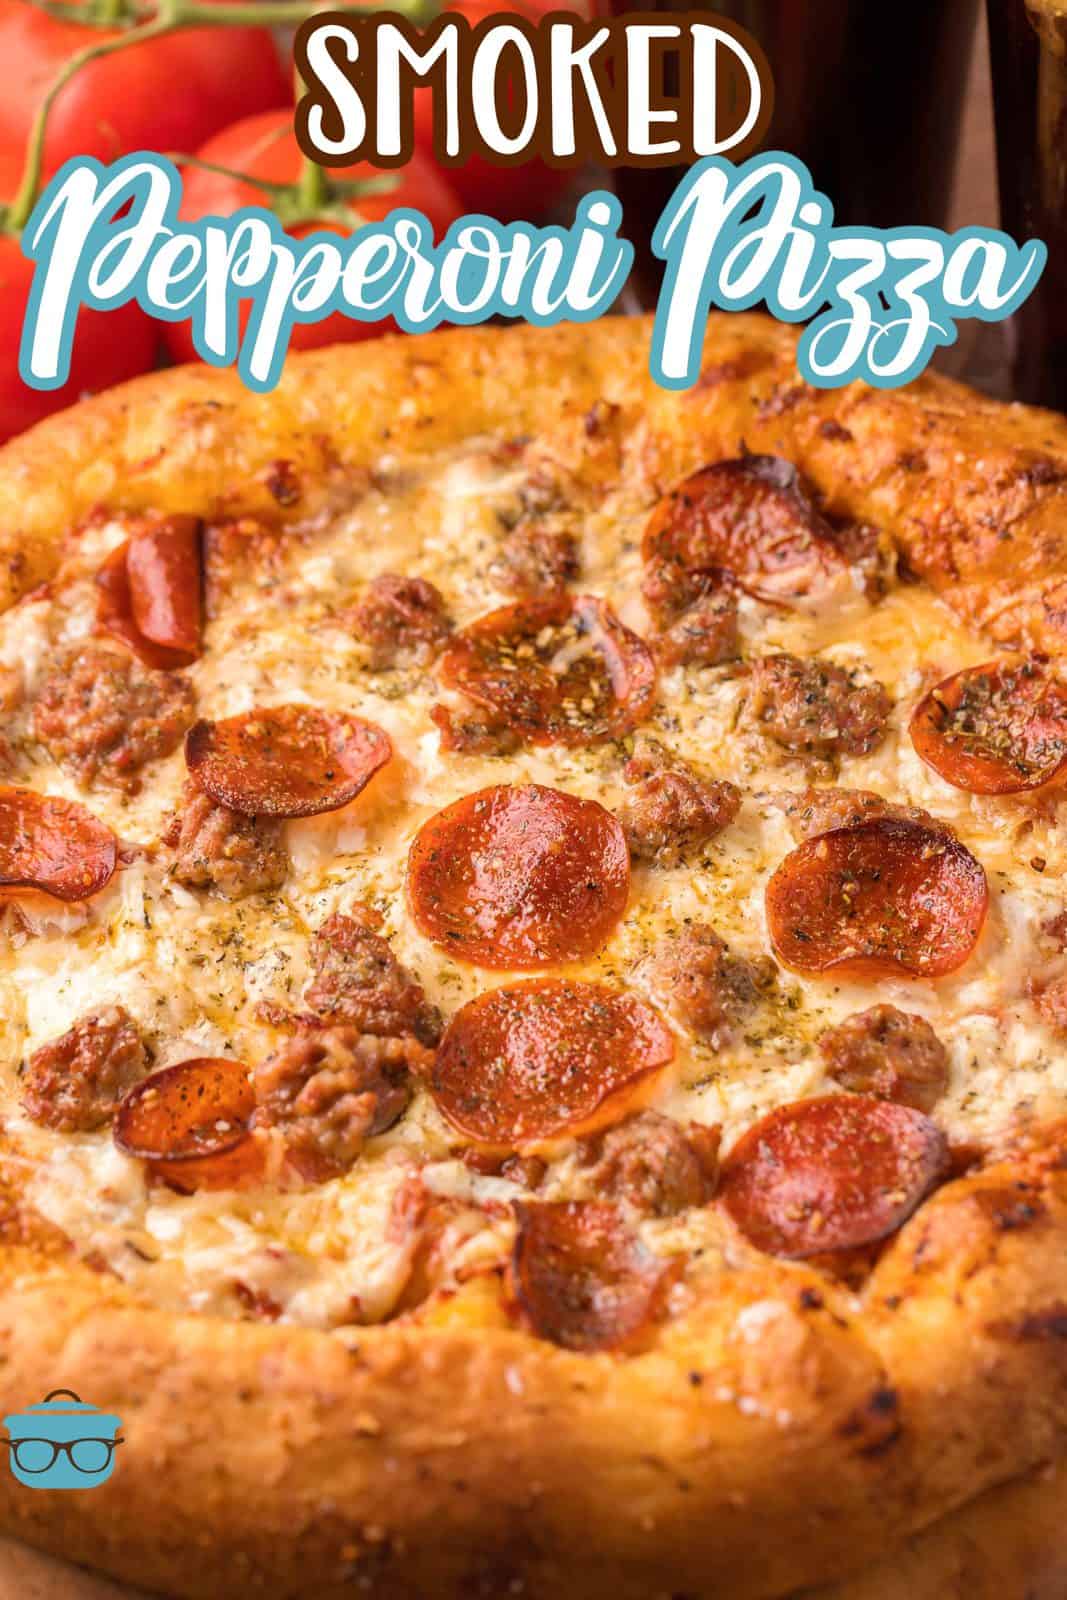 Immagine Pinterest di Pizza ai peperoni affumicati da vicino che mostra i condimenti.